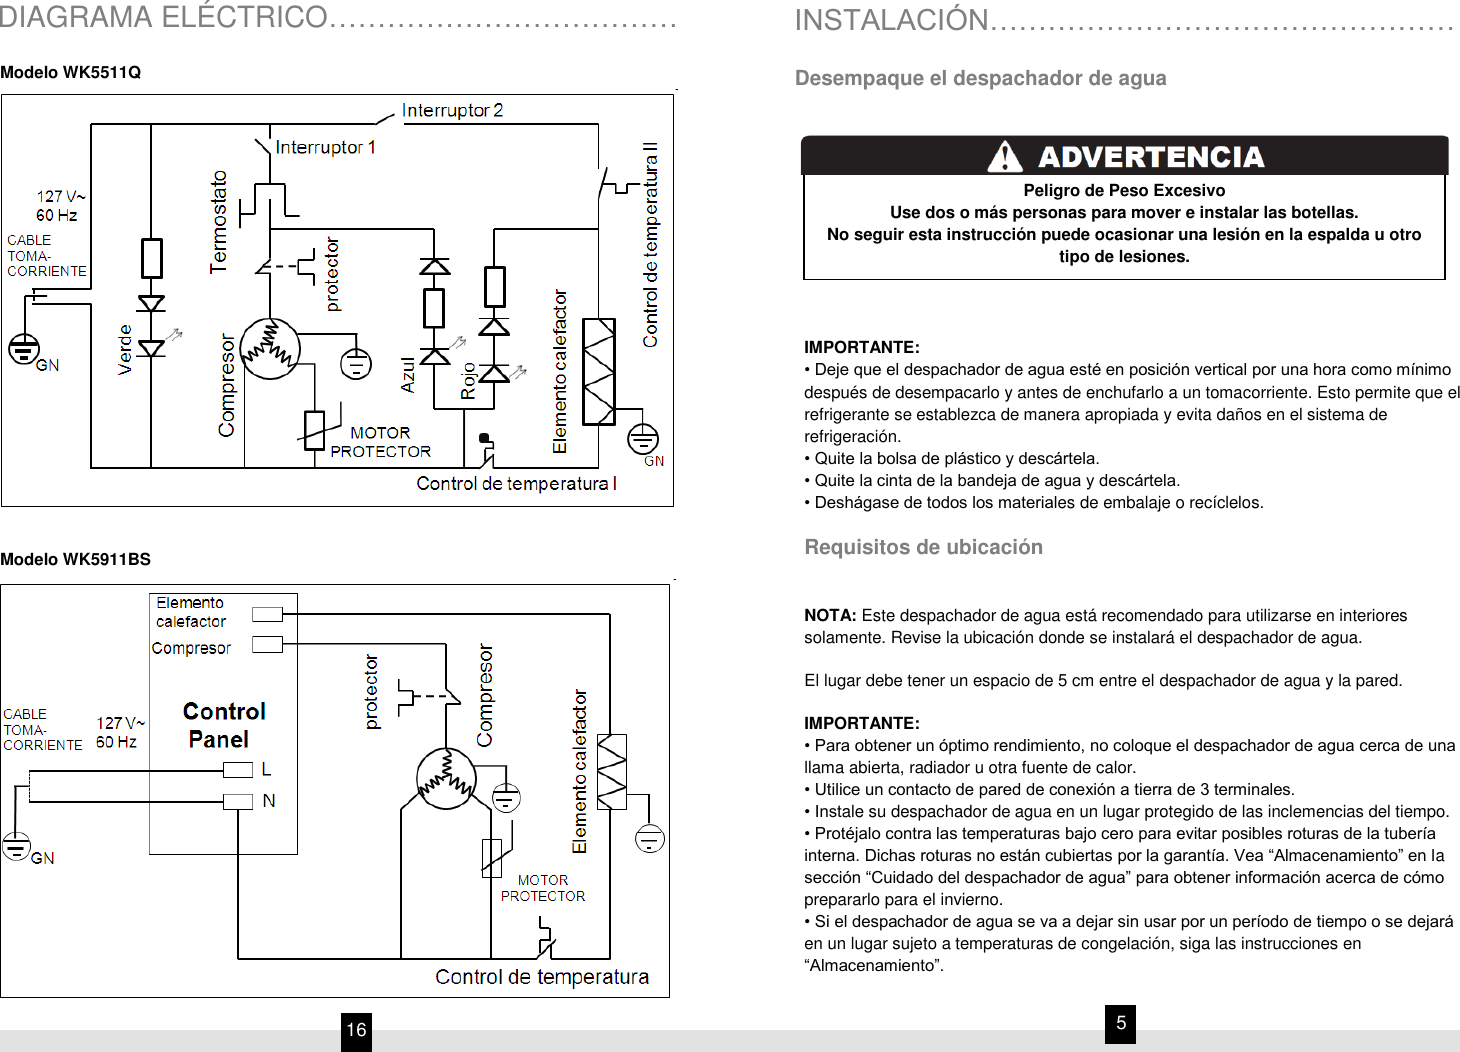 WK5911BS Manual de Uso y Cuidado